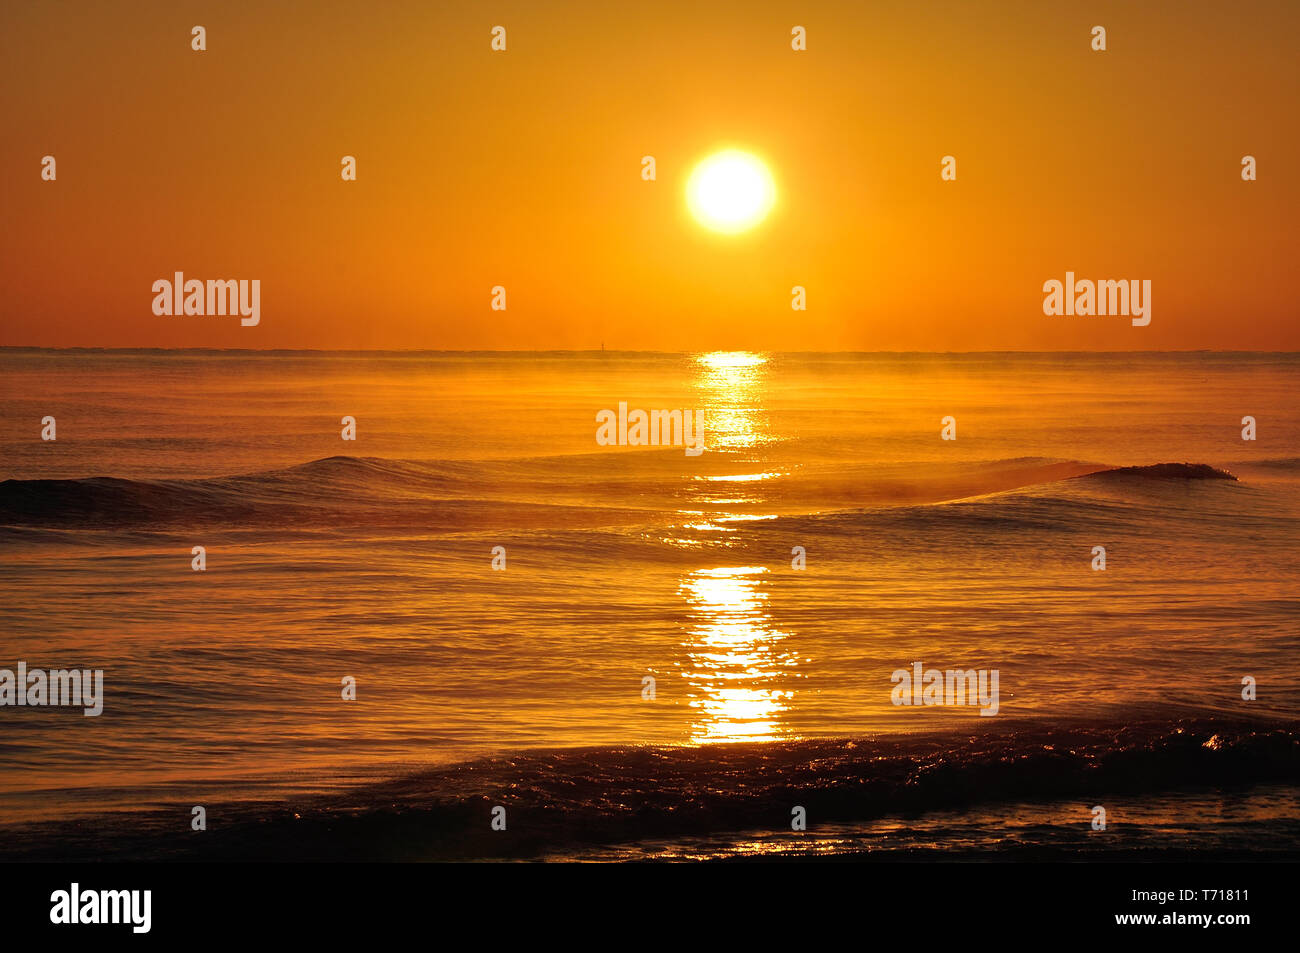 sunrise at sea Stock Photo